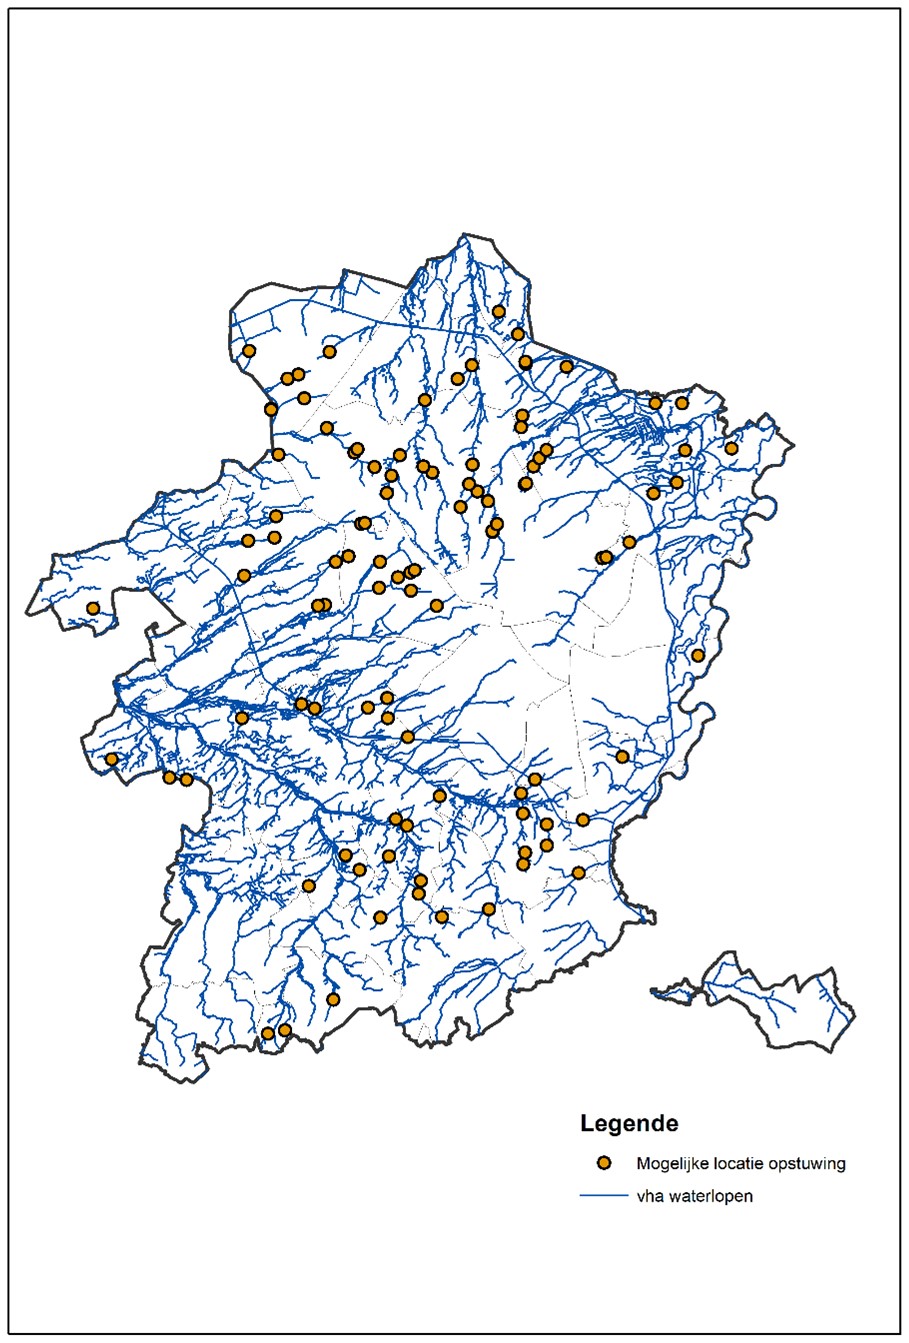 Locaties op de waterlopen categorie 2 die na een eerste analyse geschikt worden geacht voor opstuwing, op basis van de pluviale 